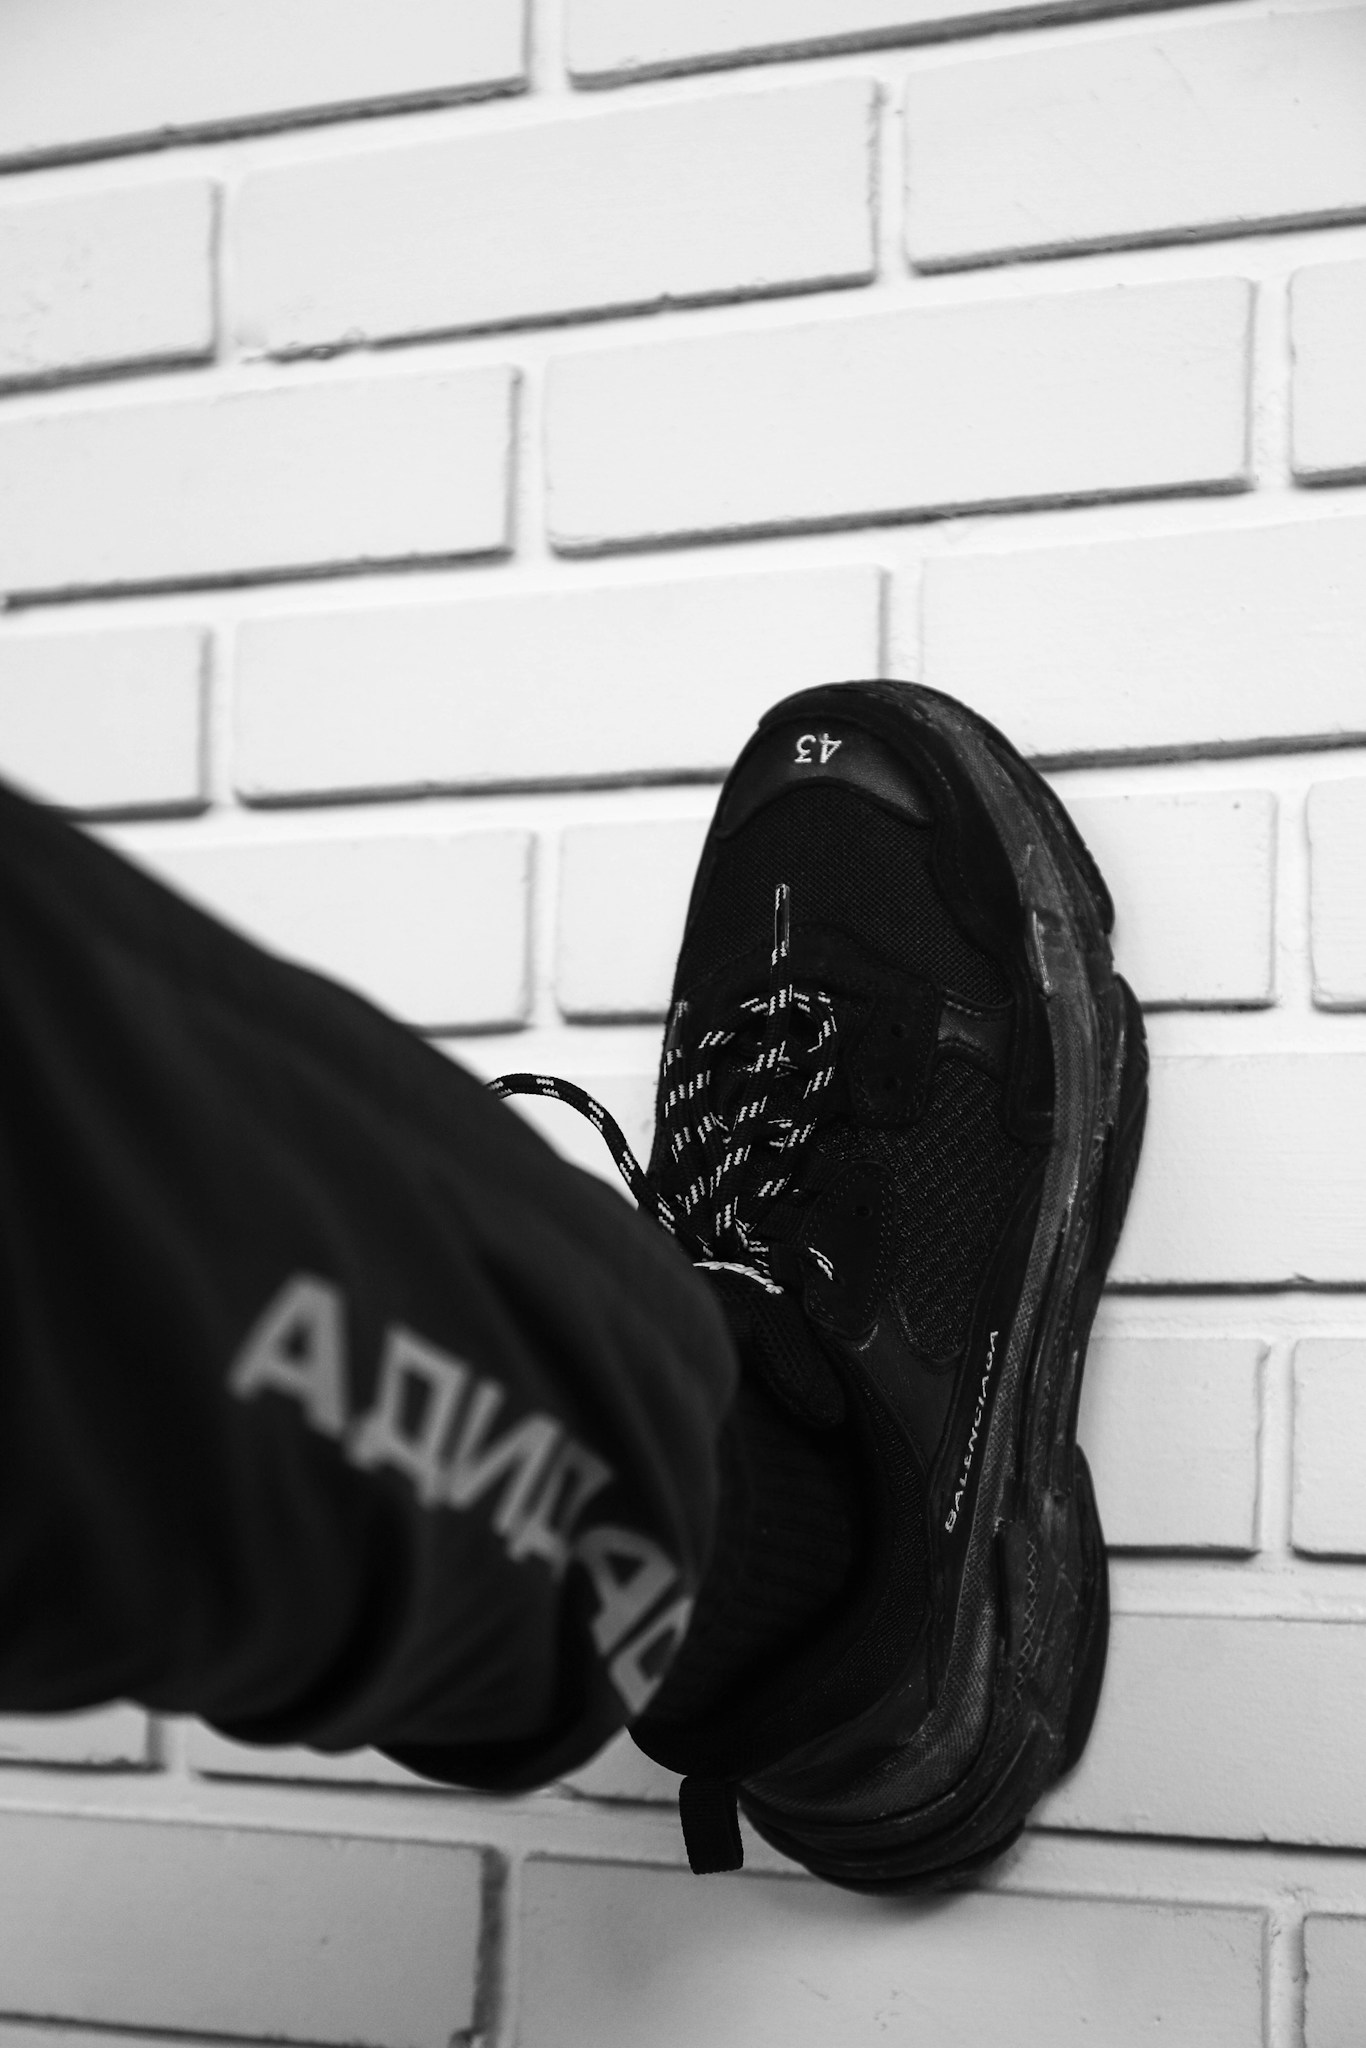 person wearing black Nike Vapor Max shoe